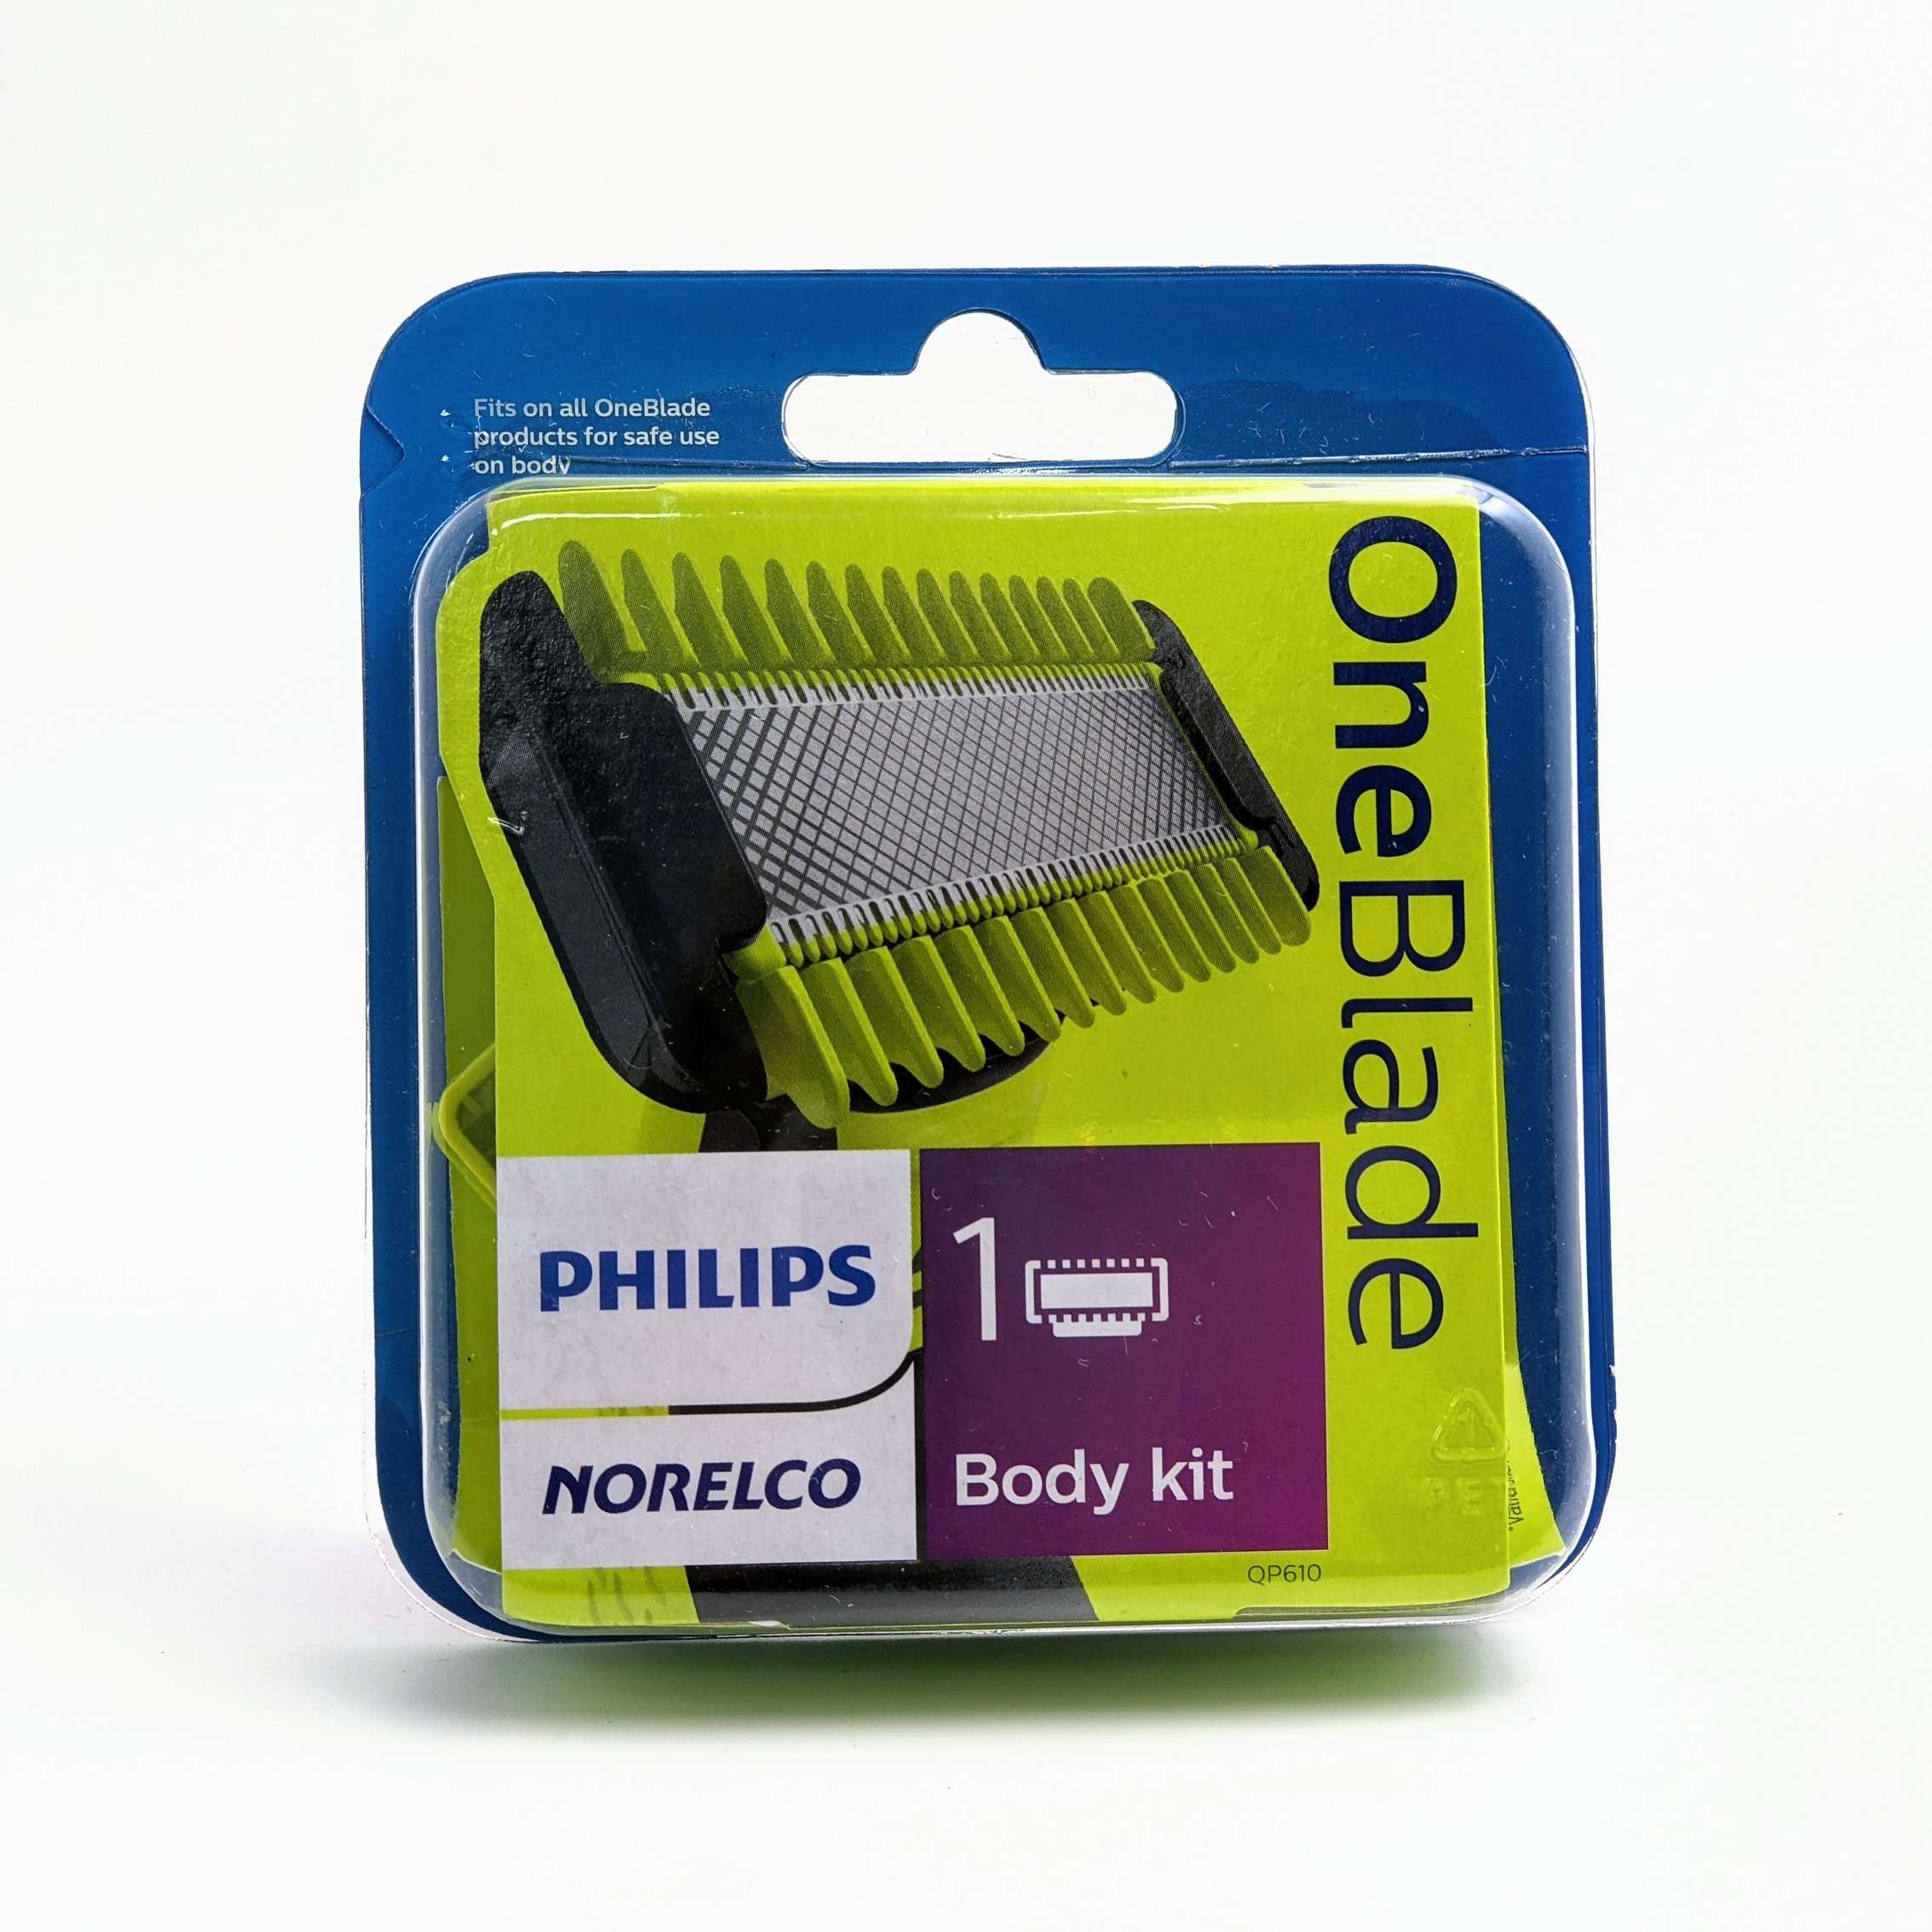 [3美國直購] Philips QP610 /80 刀頭組 含身體用替換刀片+修剪梳+保護罩 適 Norelco OneBlade 刮鬍刀